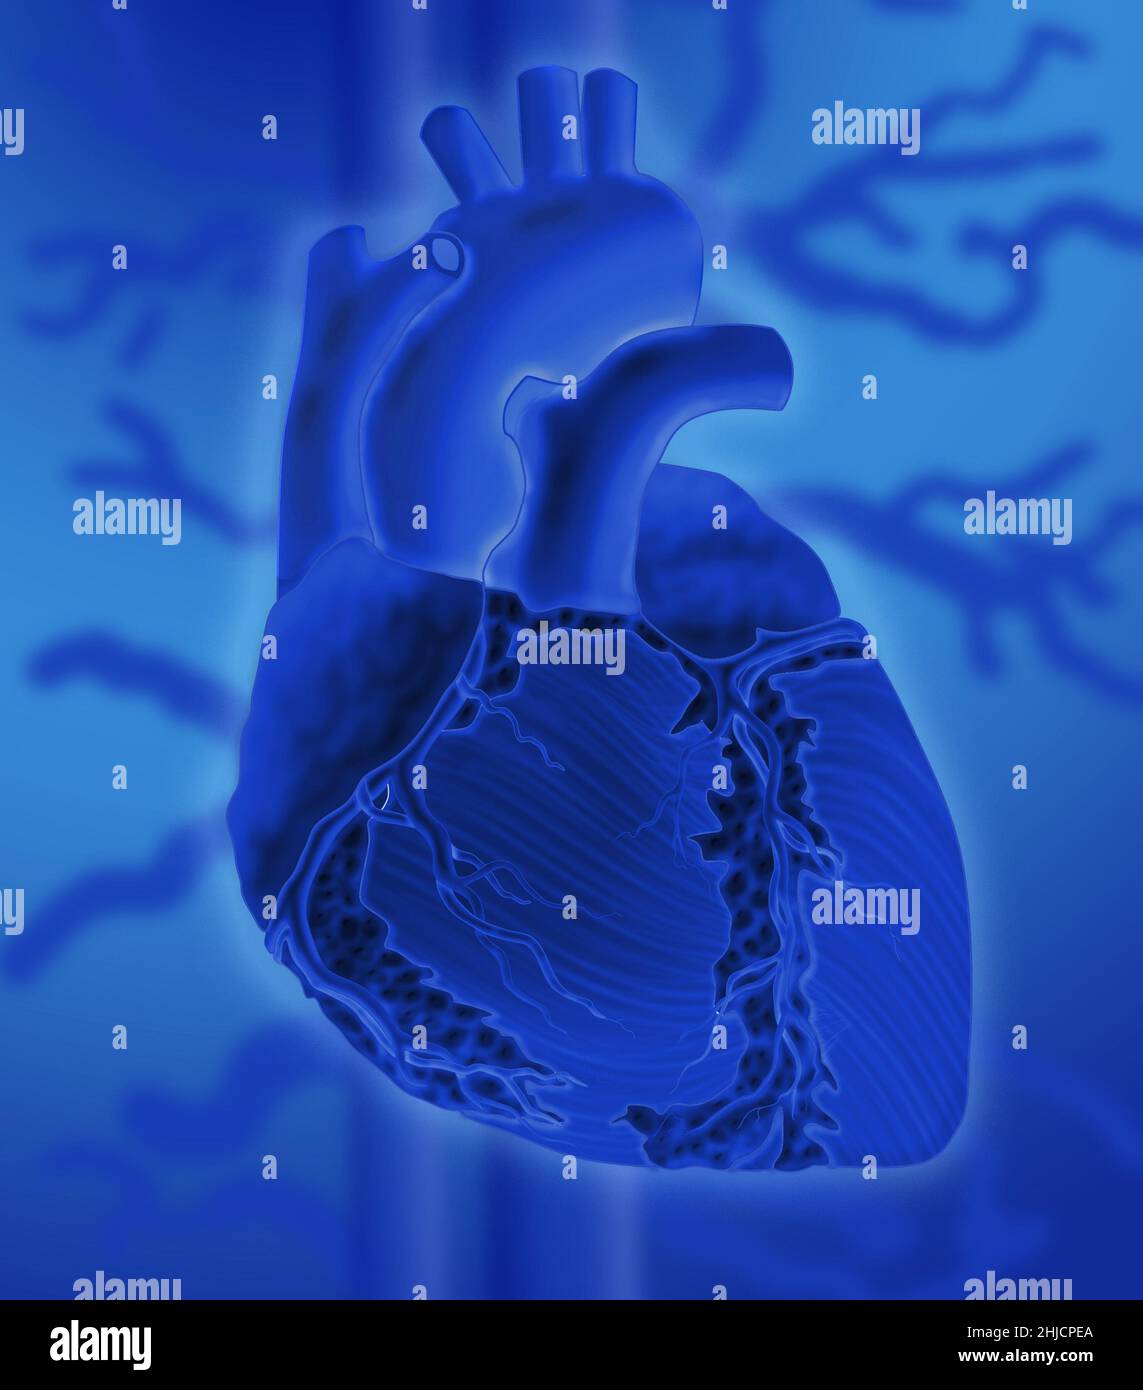 Image conceptuelle du cœur humain sur fond coloré. Banque D'Images